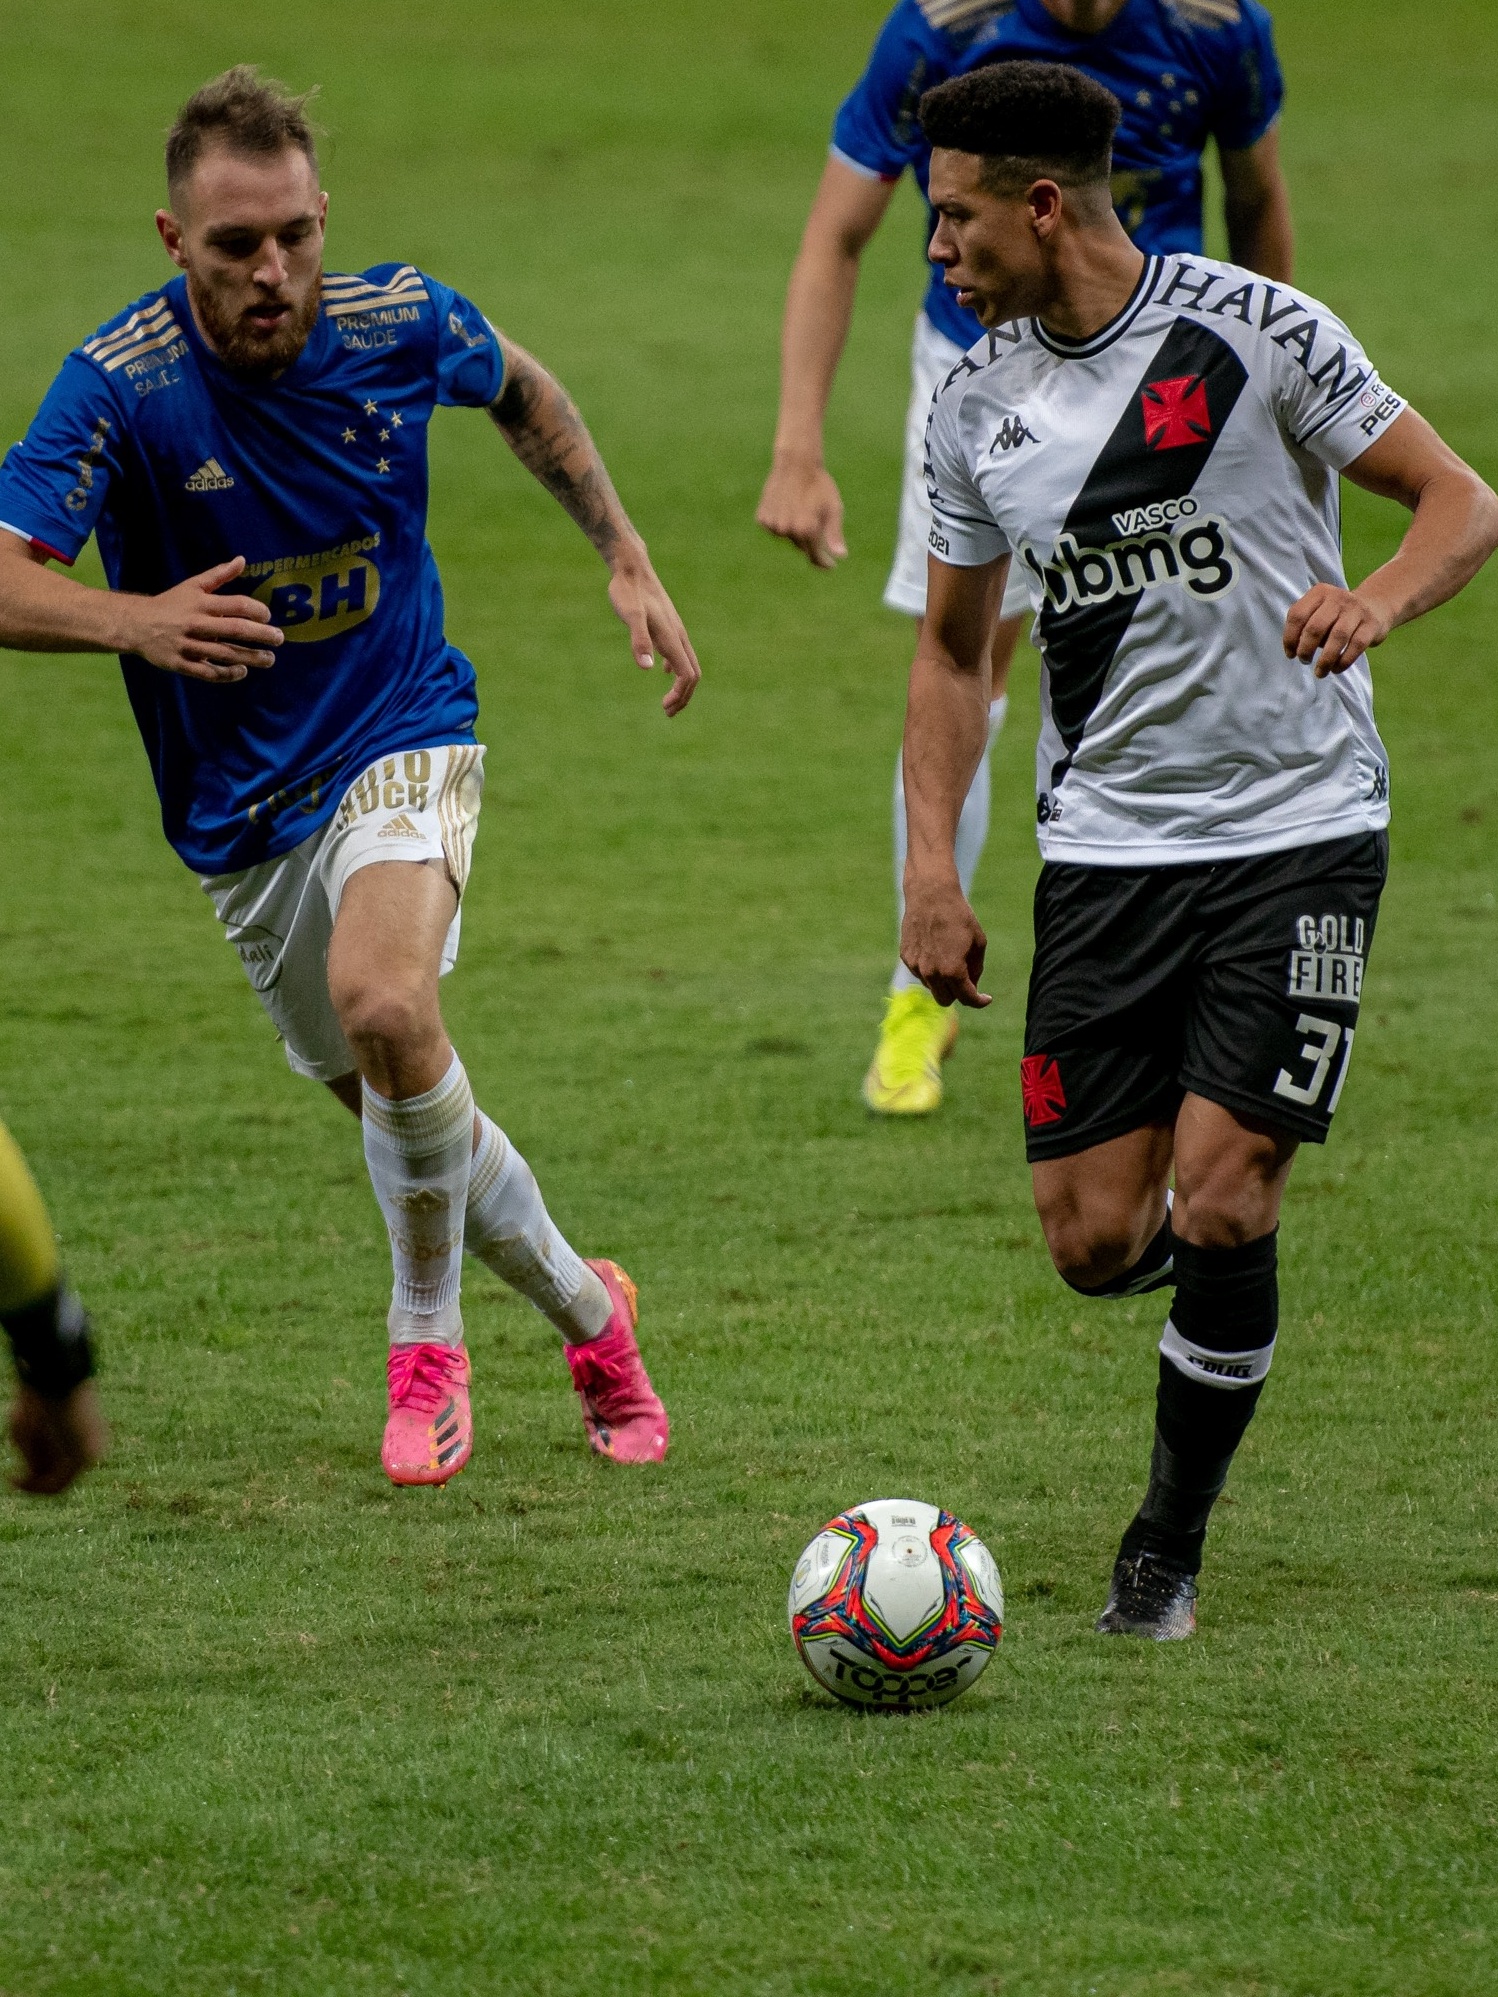 Vasco x Cruzeiro: retrospecto, prováveis escalações, arbitragem e onde  assistir